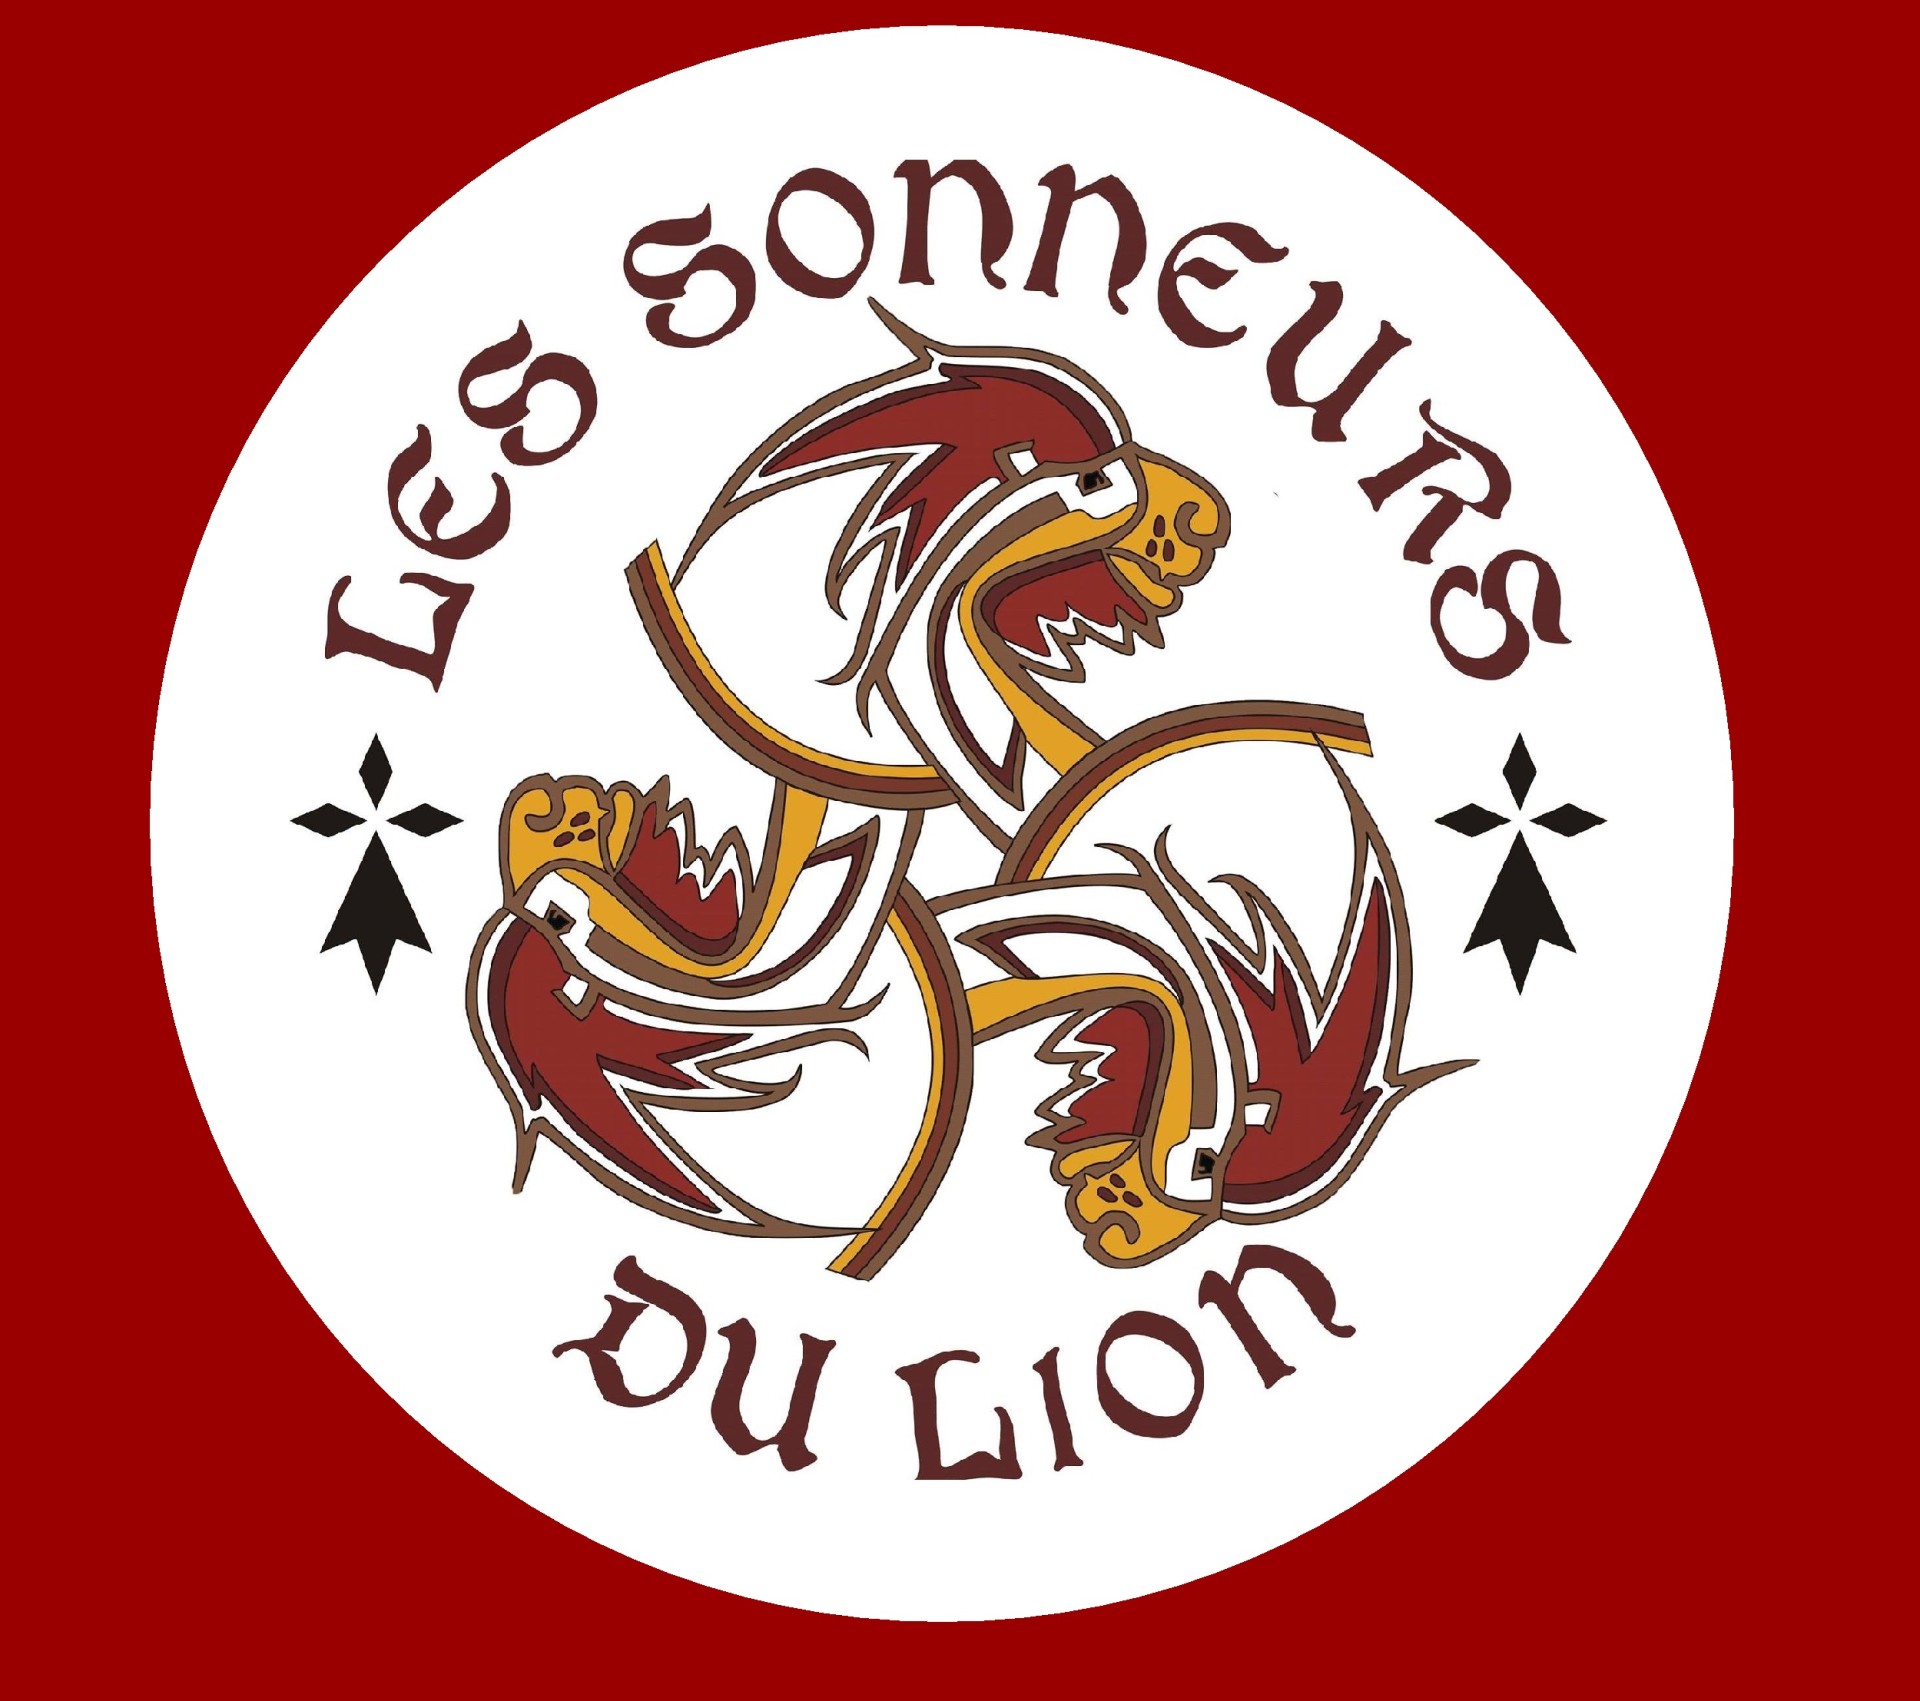 sonneurs-du-lion